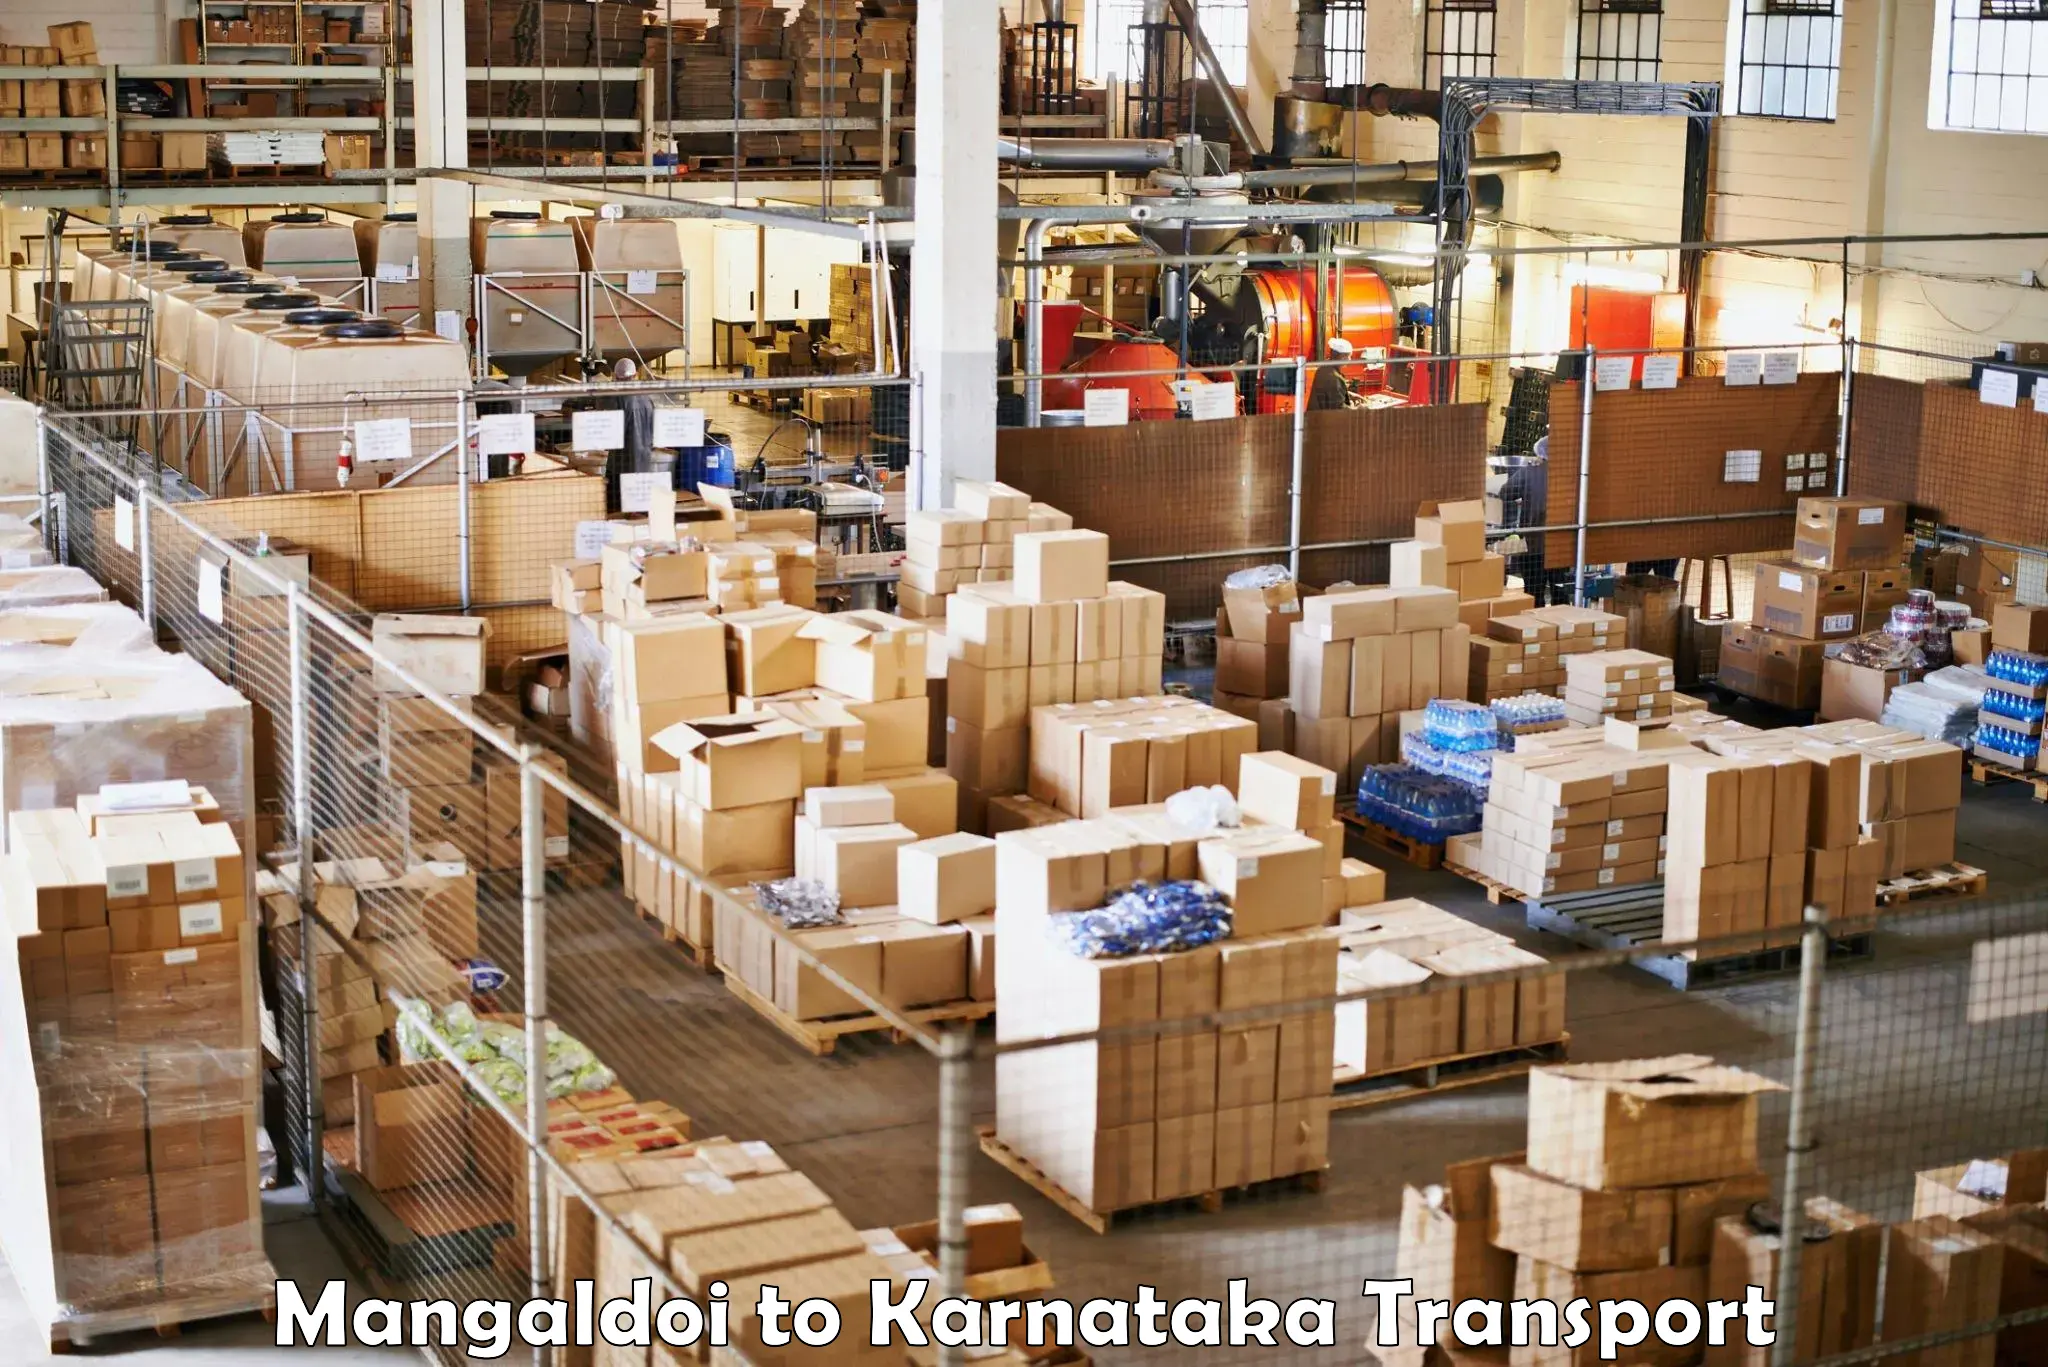 Cargo transportation services Mangaldoi to Nelamangala